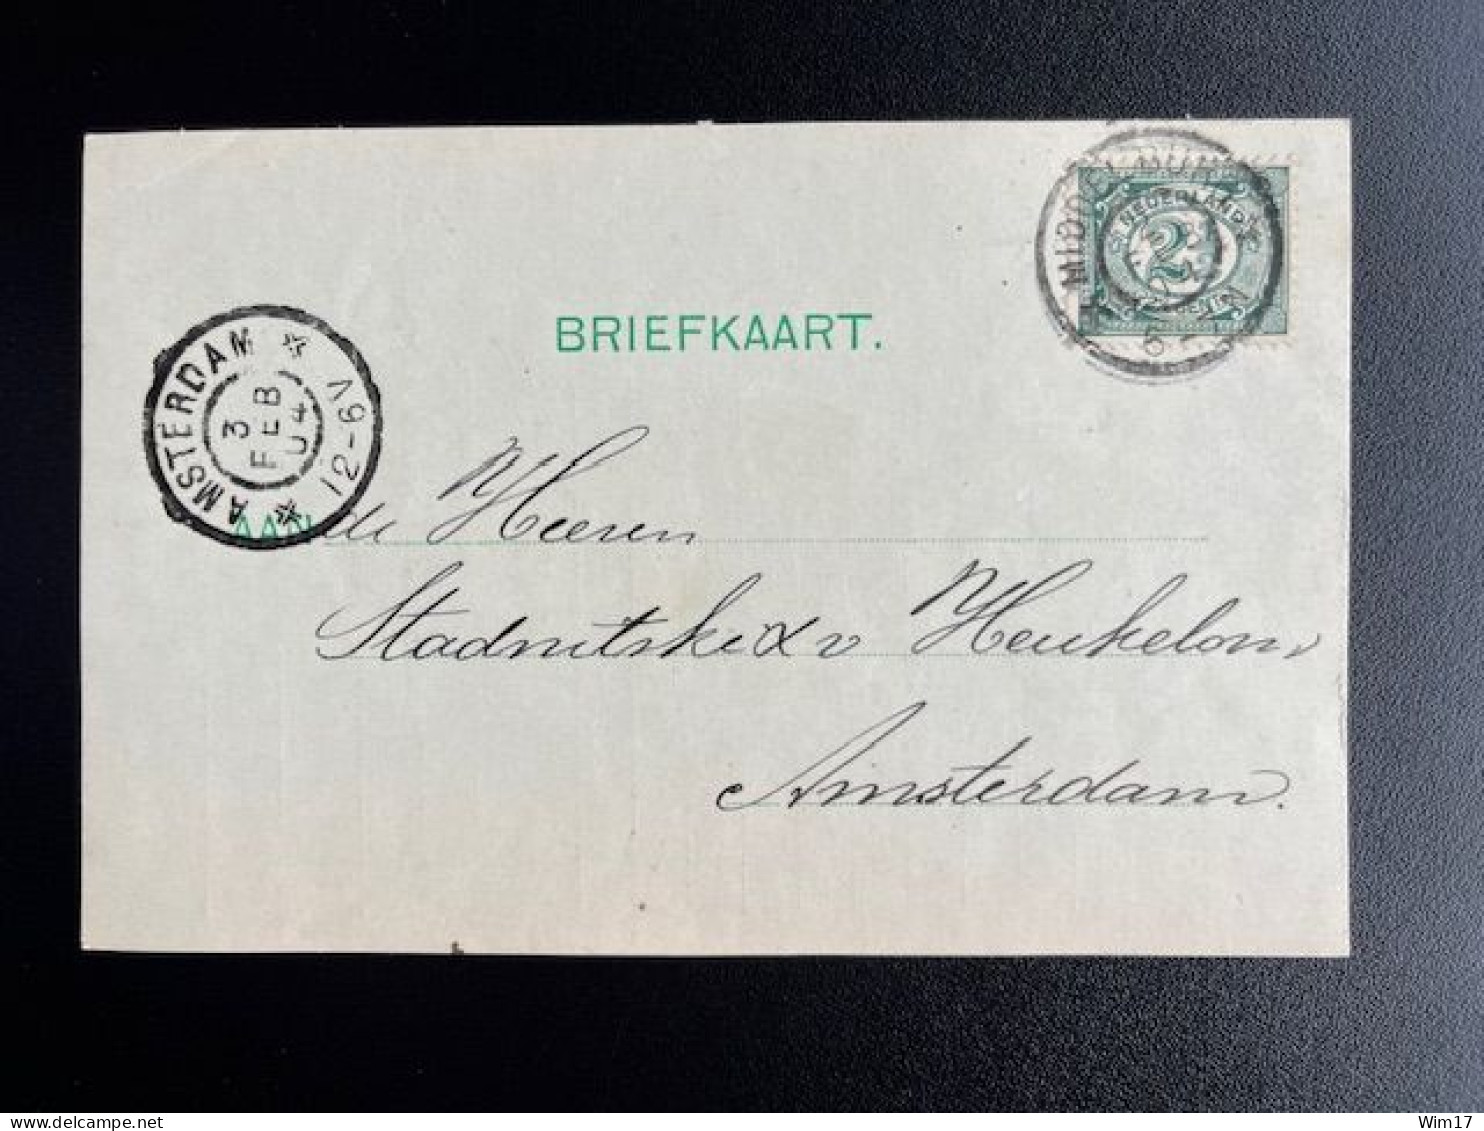 NETHERLANDS 1904 POSTCARD MIDDELBURG TO AMSTERDAM 02-02-1904 NEDERLAND BRIEFKAART - Ganzsachen